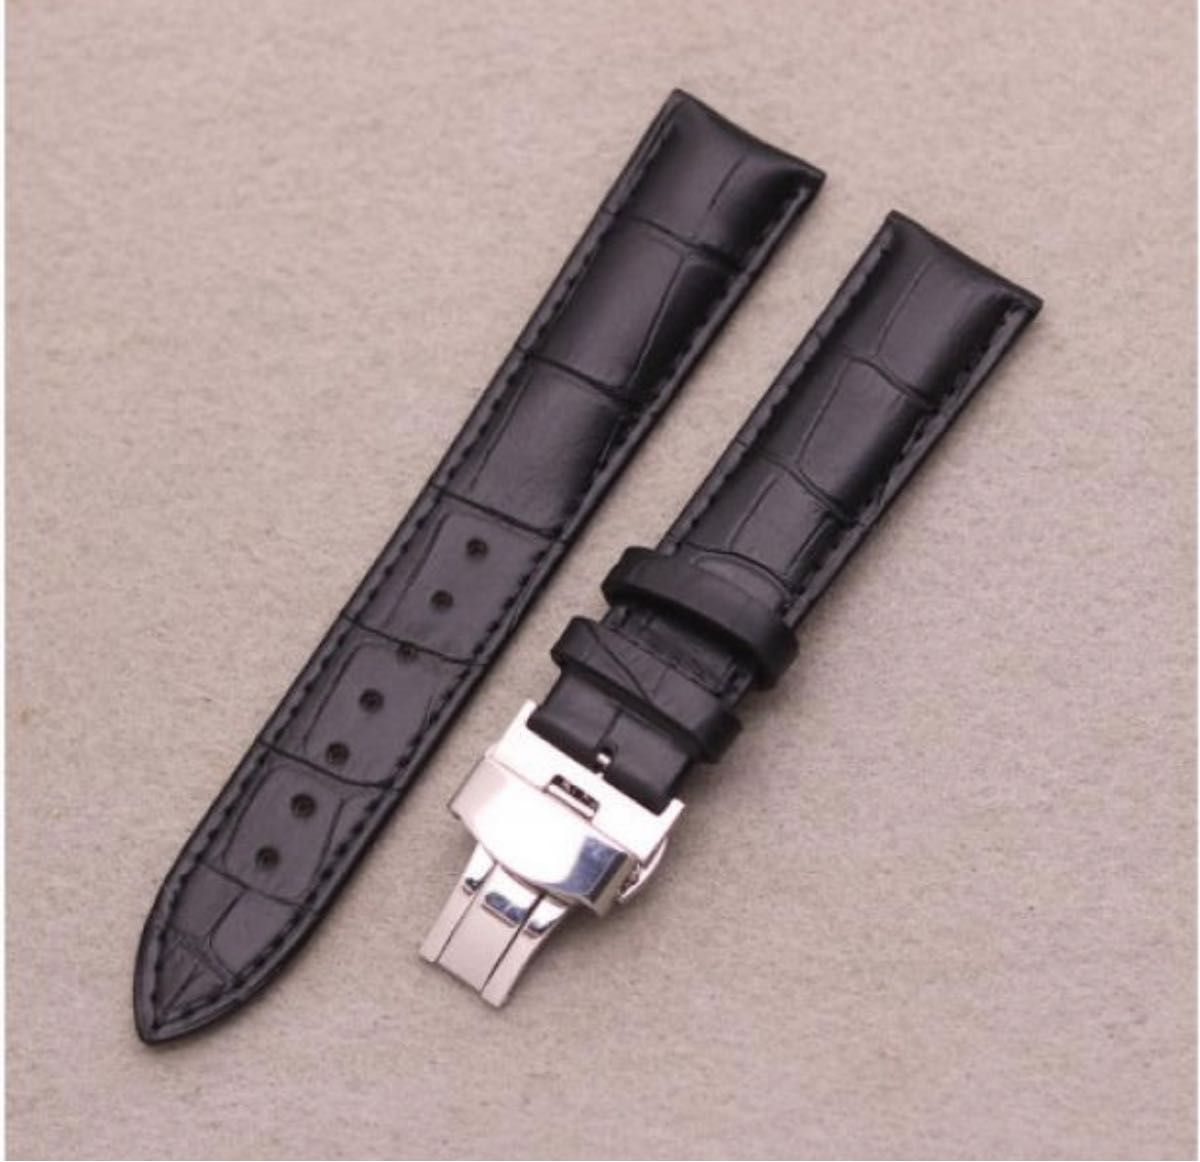 新品未使用 Dバックル ブラック 黒 交換用ベルト レザーベルト  腕時計ベルト バネ棒付き 革ベルト 22mm 箱付き